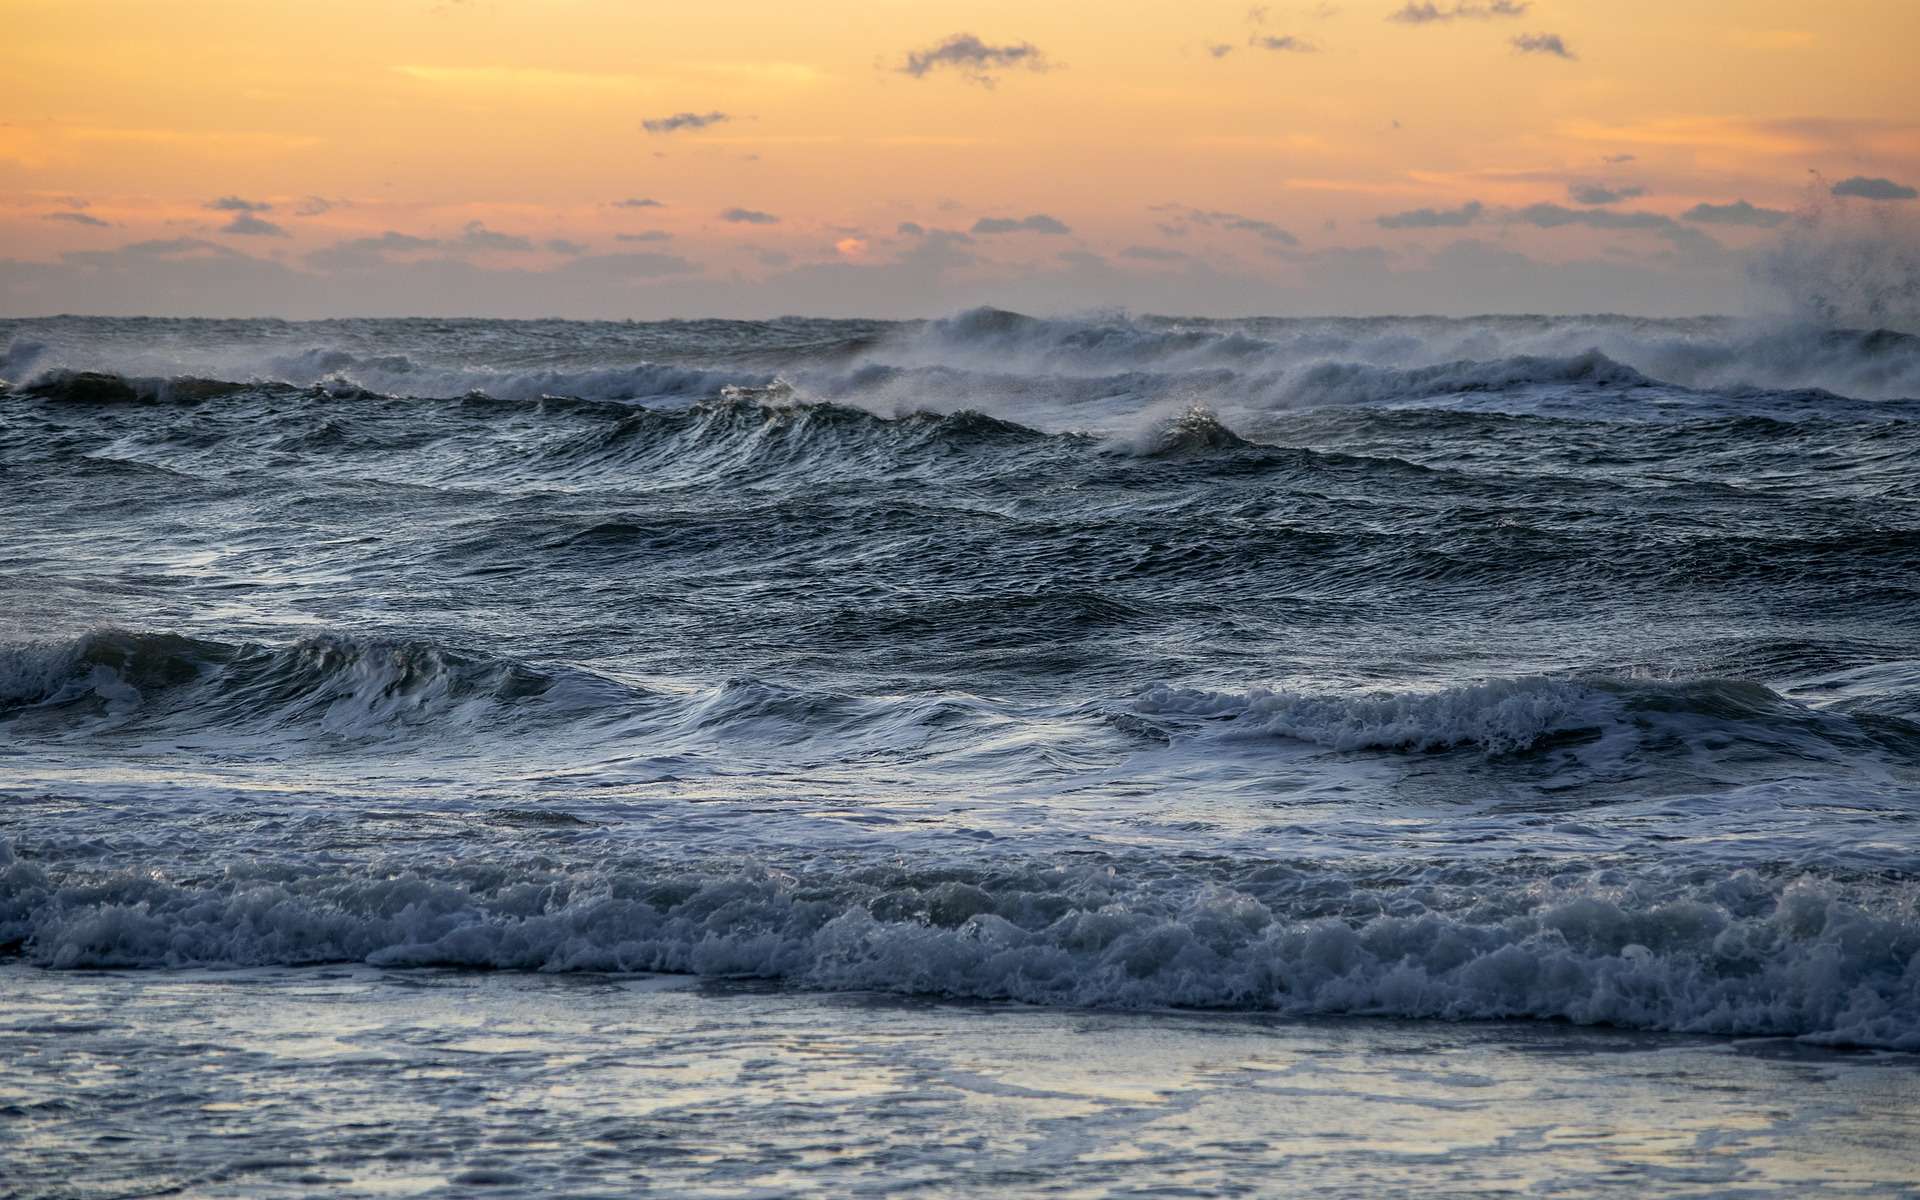 Le niveau de l'eau des côtes de Louisiane, dans le golfe du Mexique, s'est élevé de 30 cm en 100 ans. © pixabay, Woeger